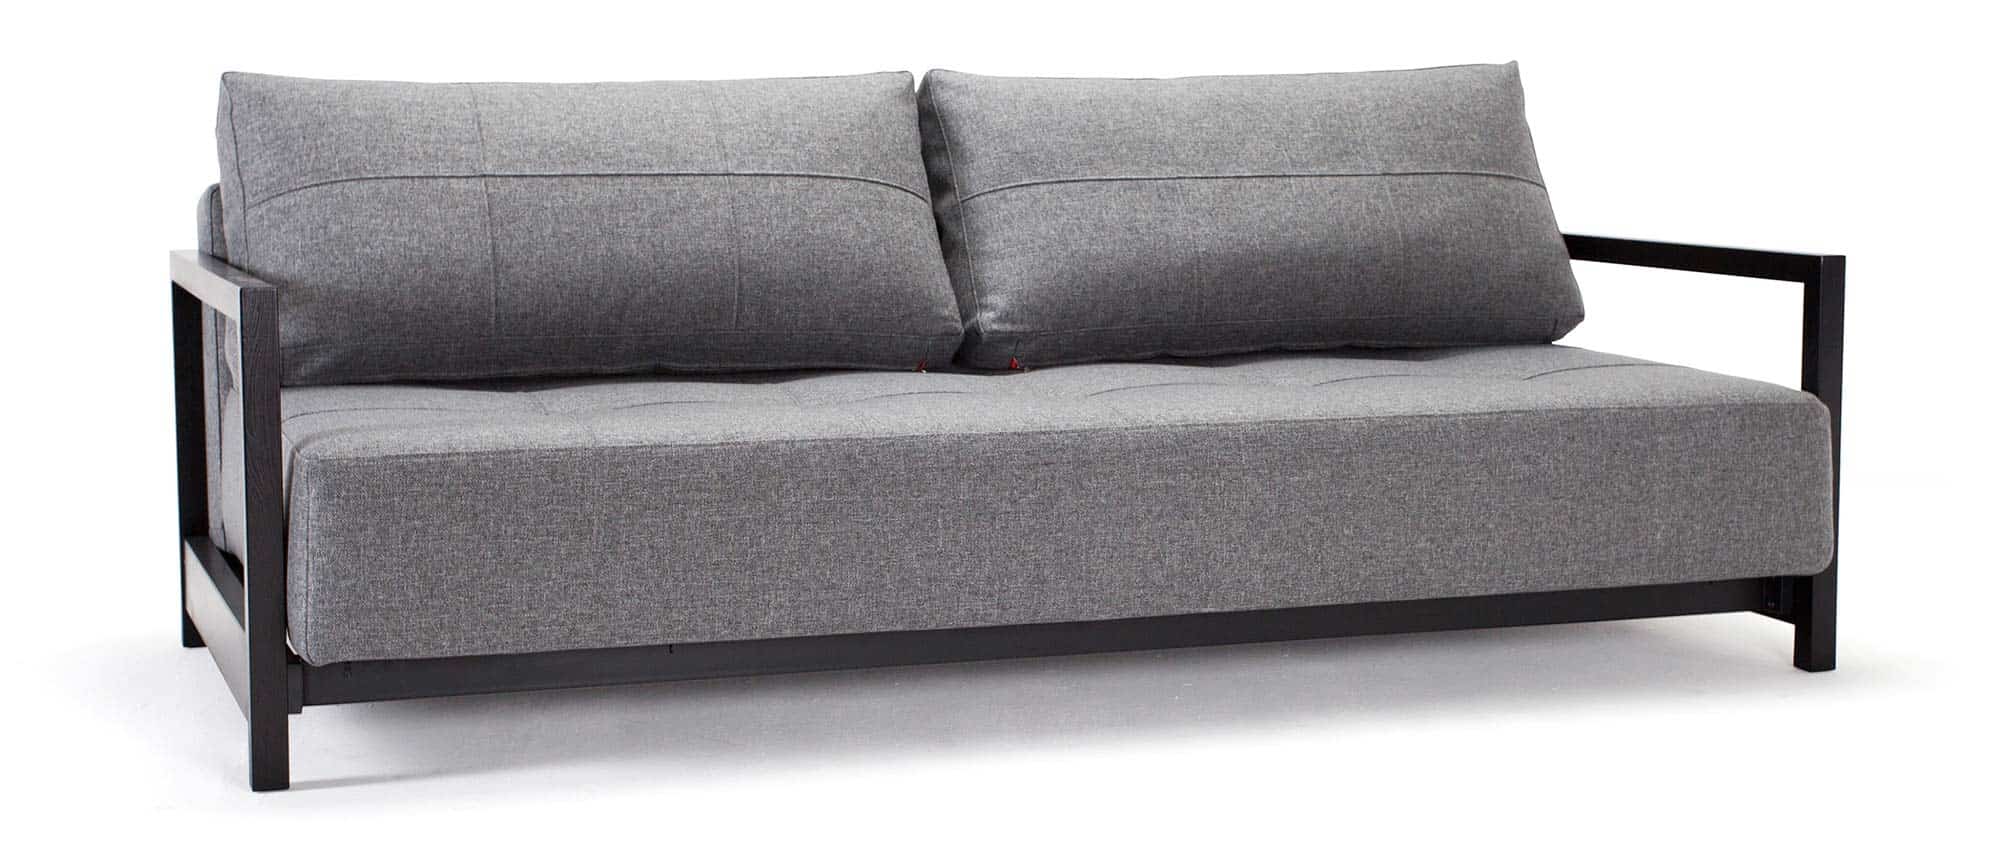 graues Schlafsofa BIFROST DELUXE EXCESS von Innovation mit Holzarmlehnen schwarz, Lounge Sofa Gästebett für 2 Personen - Liegefläche 155x200 cm